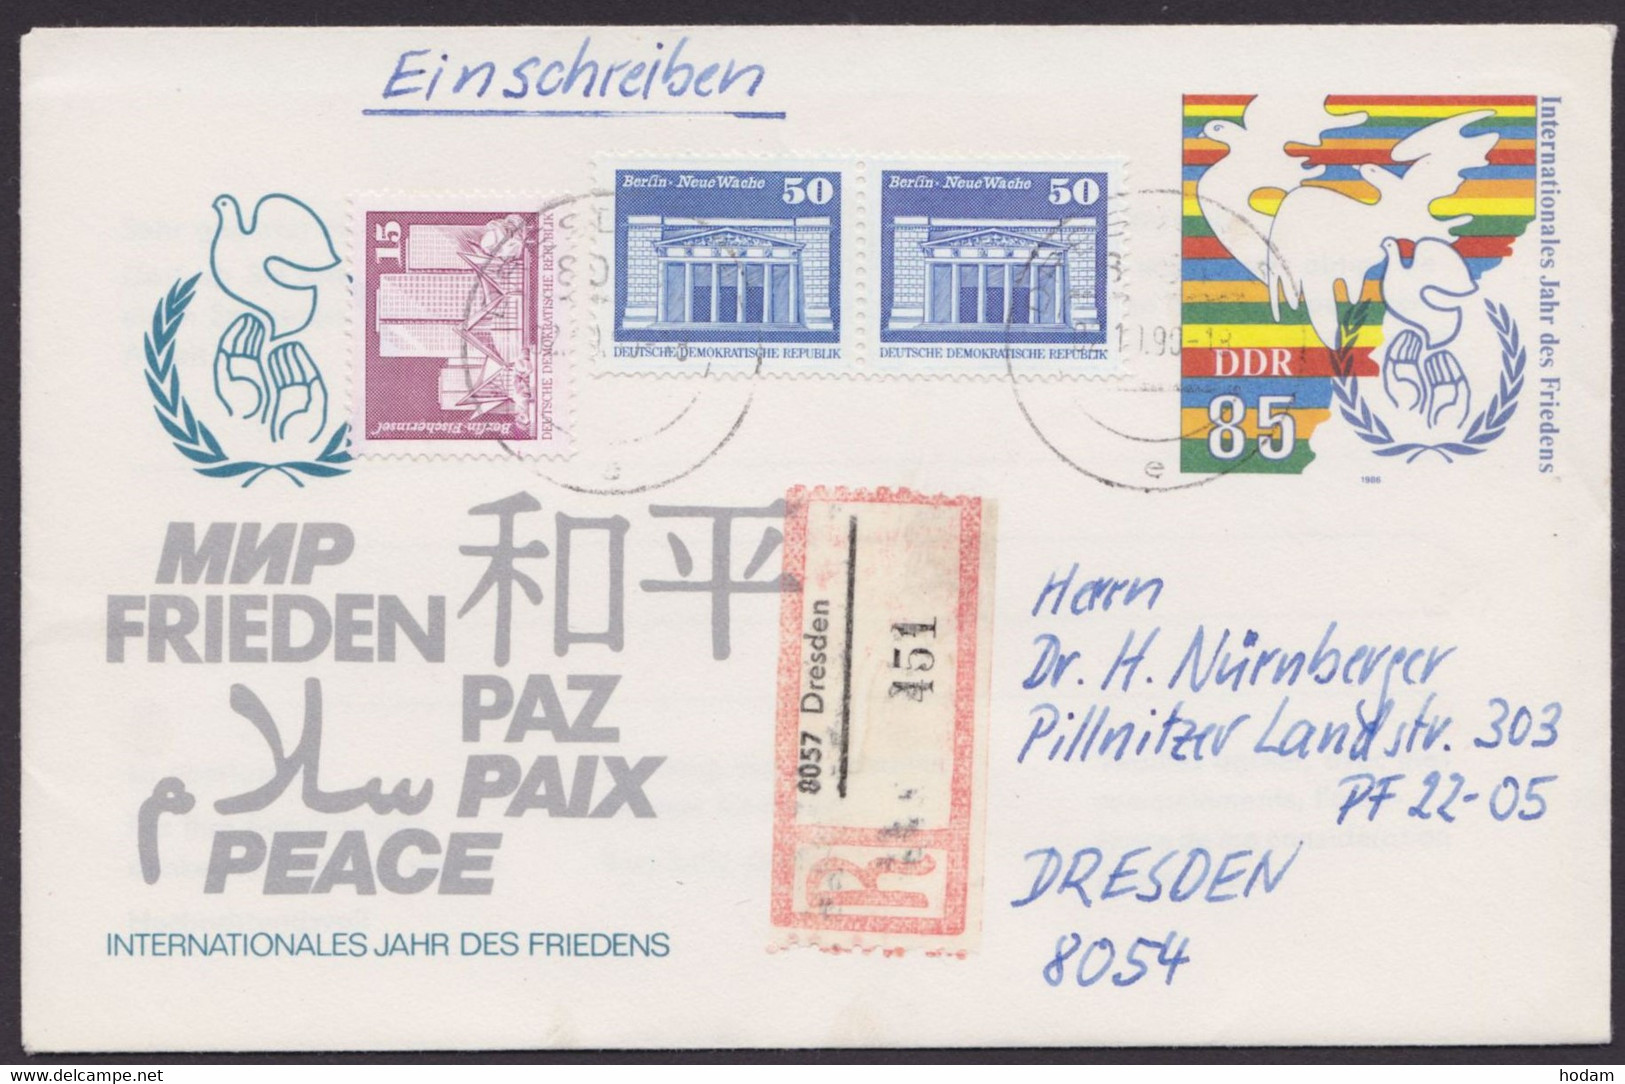 U 5 Mit Zusatzfrankatur Als Orts-R-Brief "Dresden", 2.10.90 - Enveloppes - Oblitérées